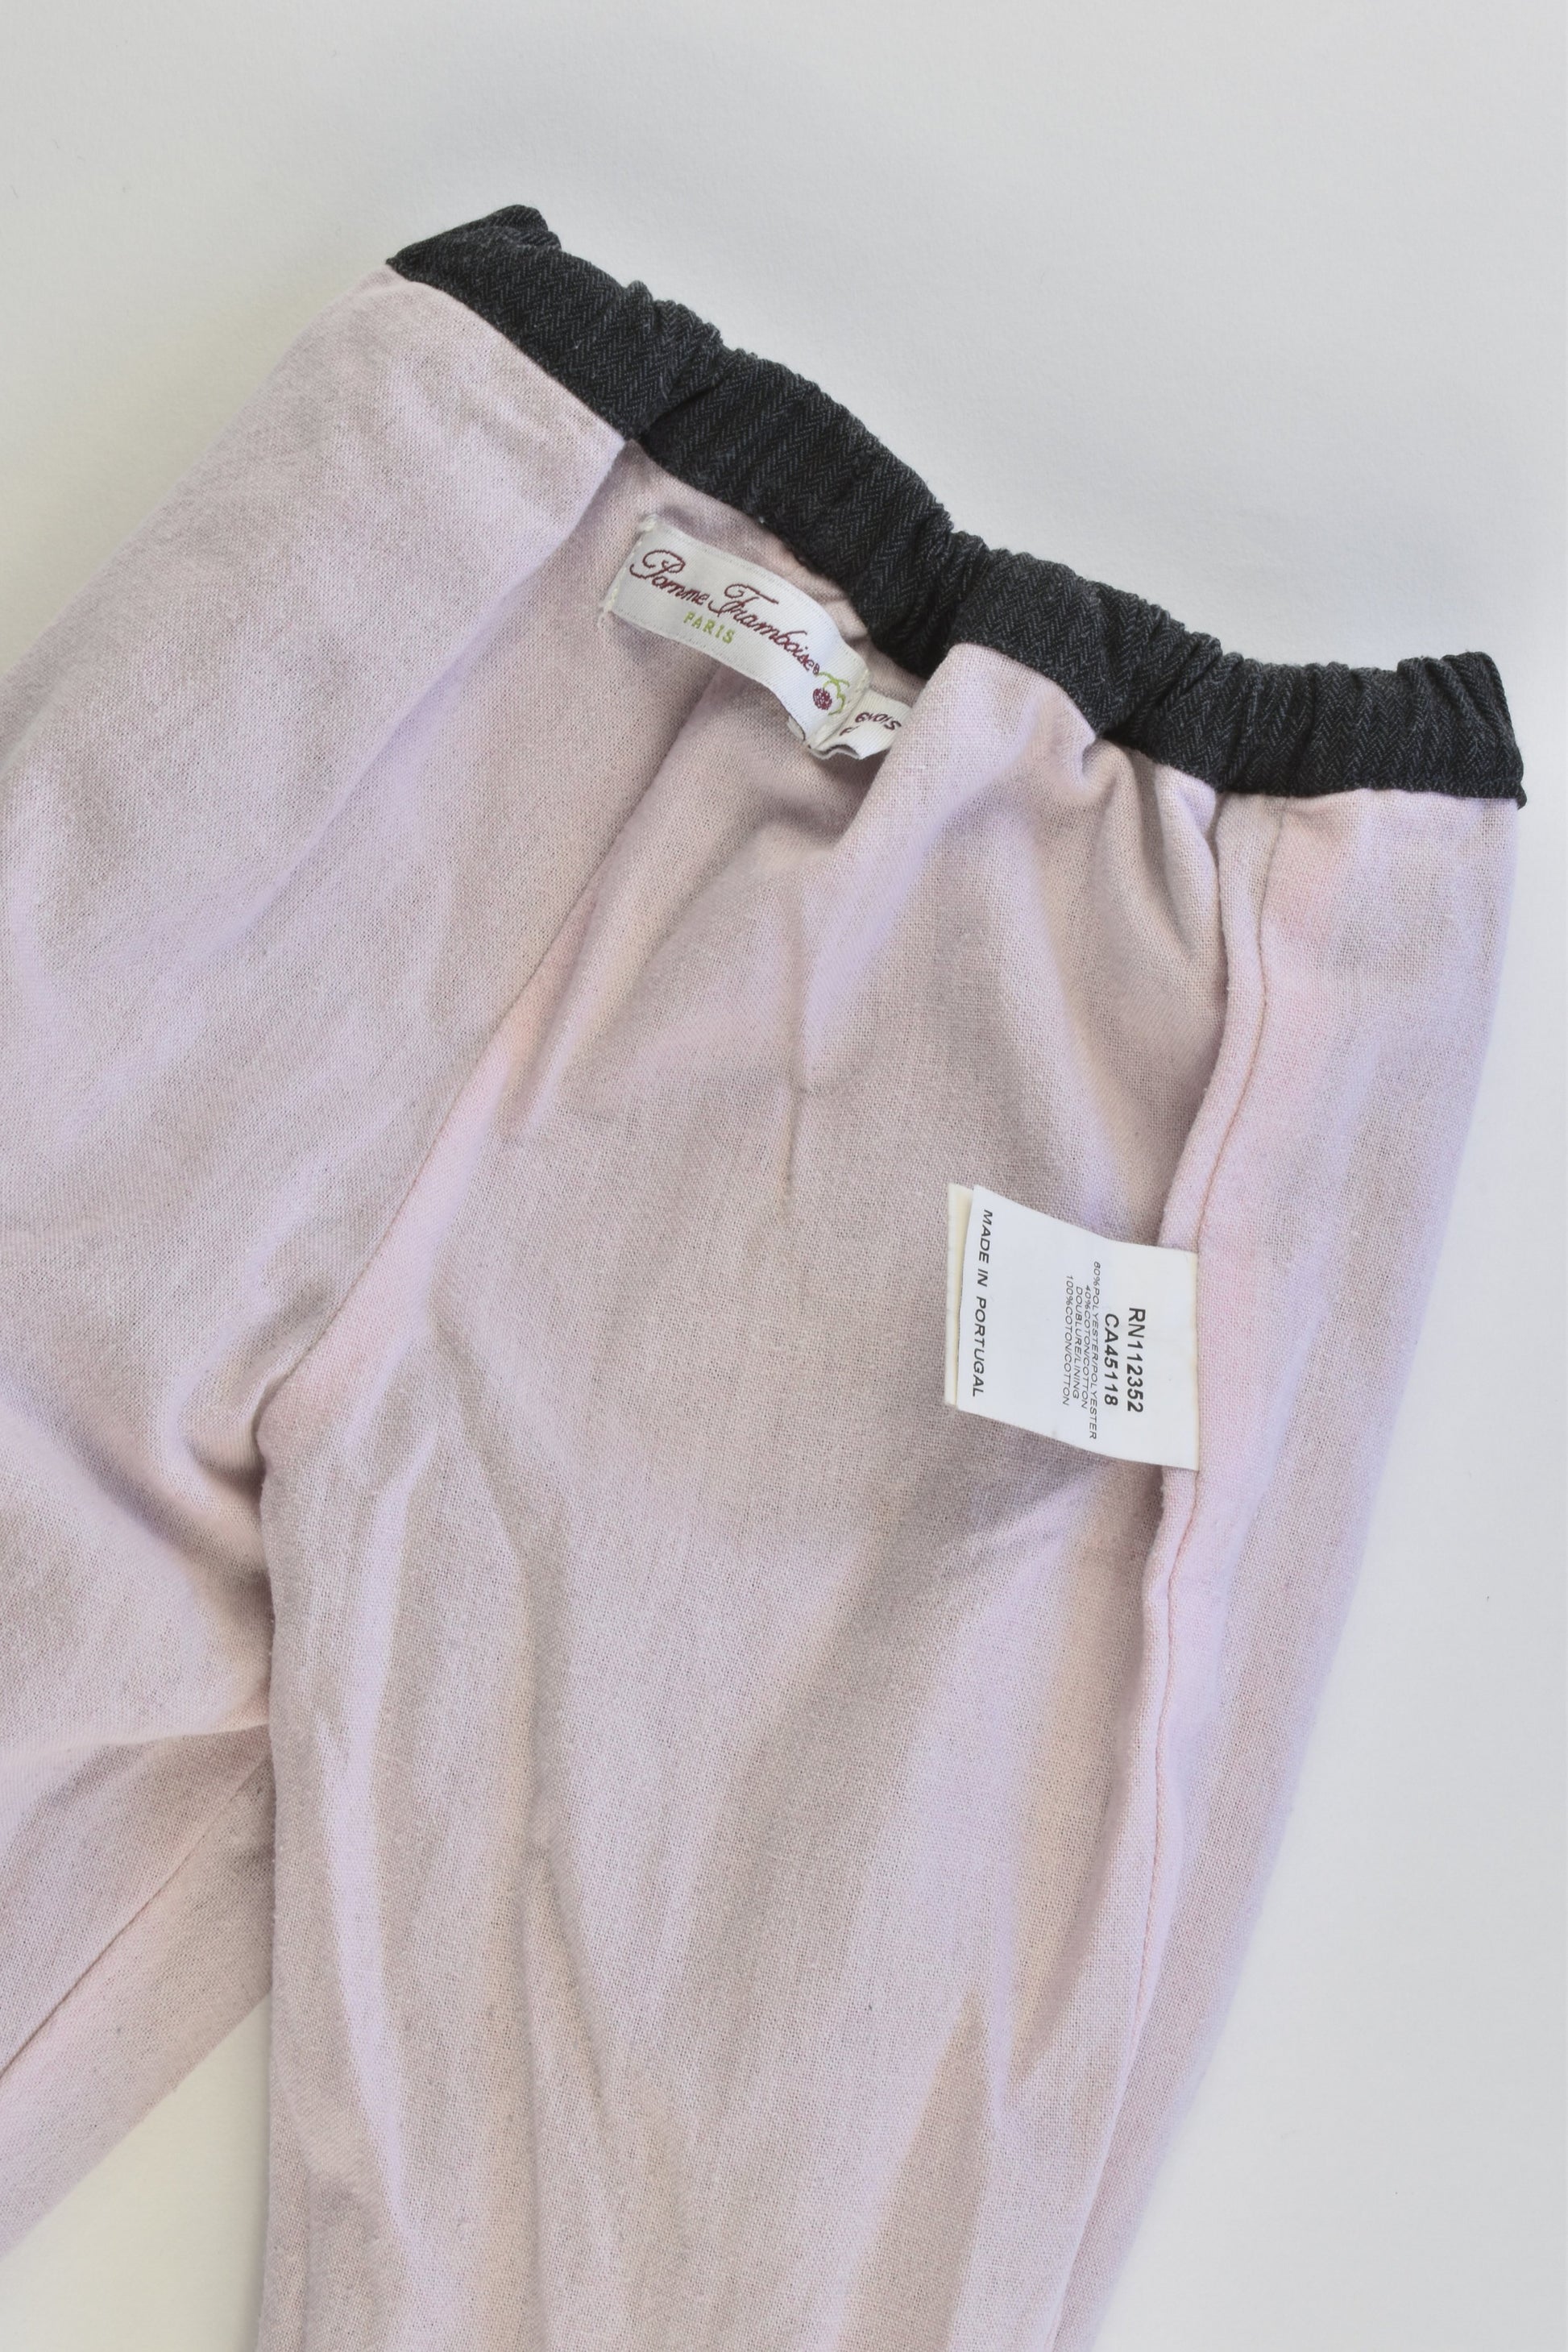 Pomme Framboise Paris Size 00 (6 months, 68 cm) Lined Pants